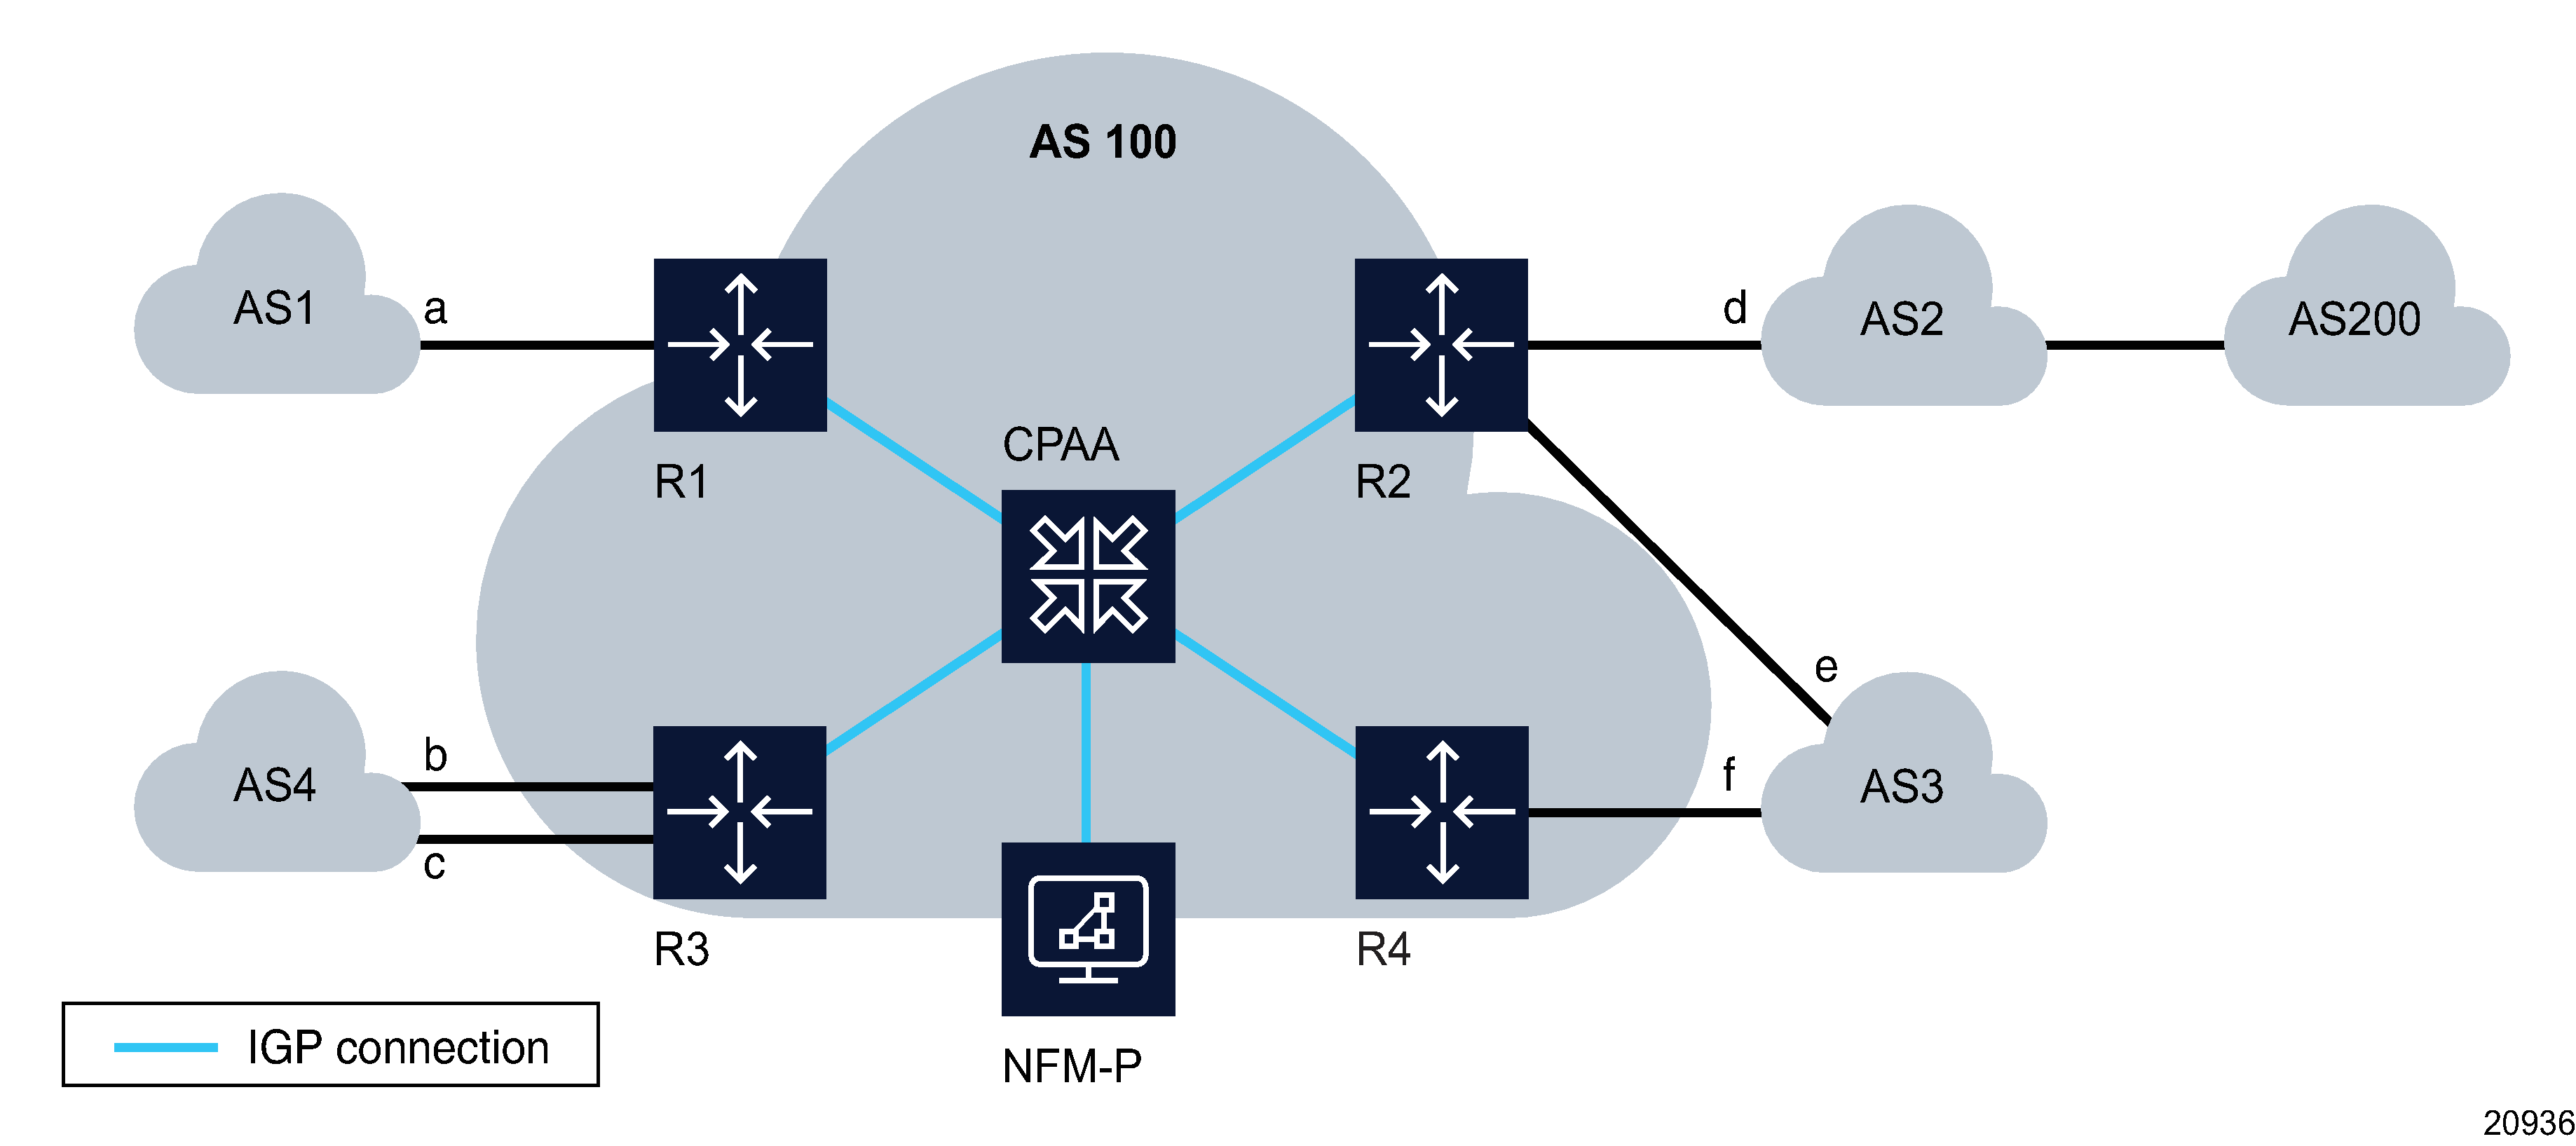 Sample BGP network